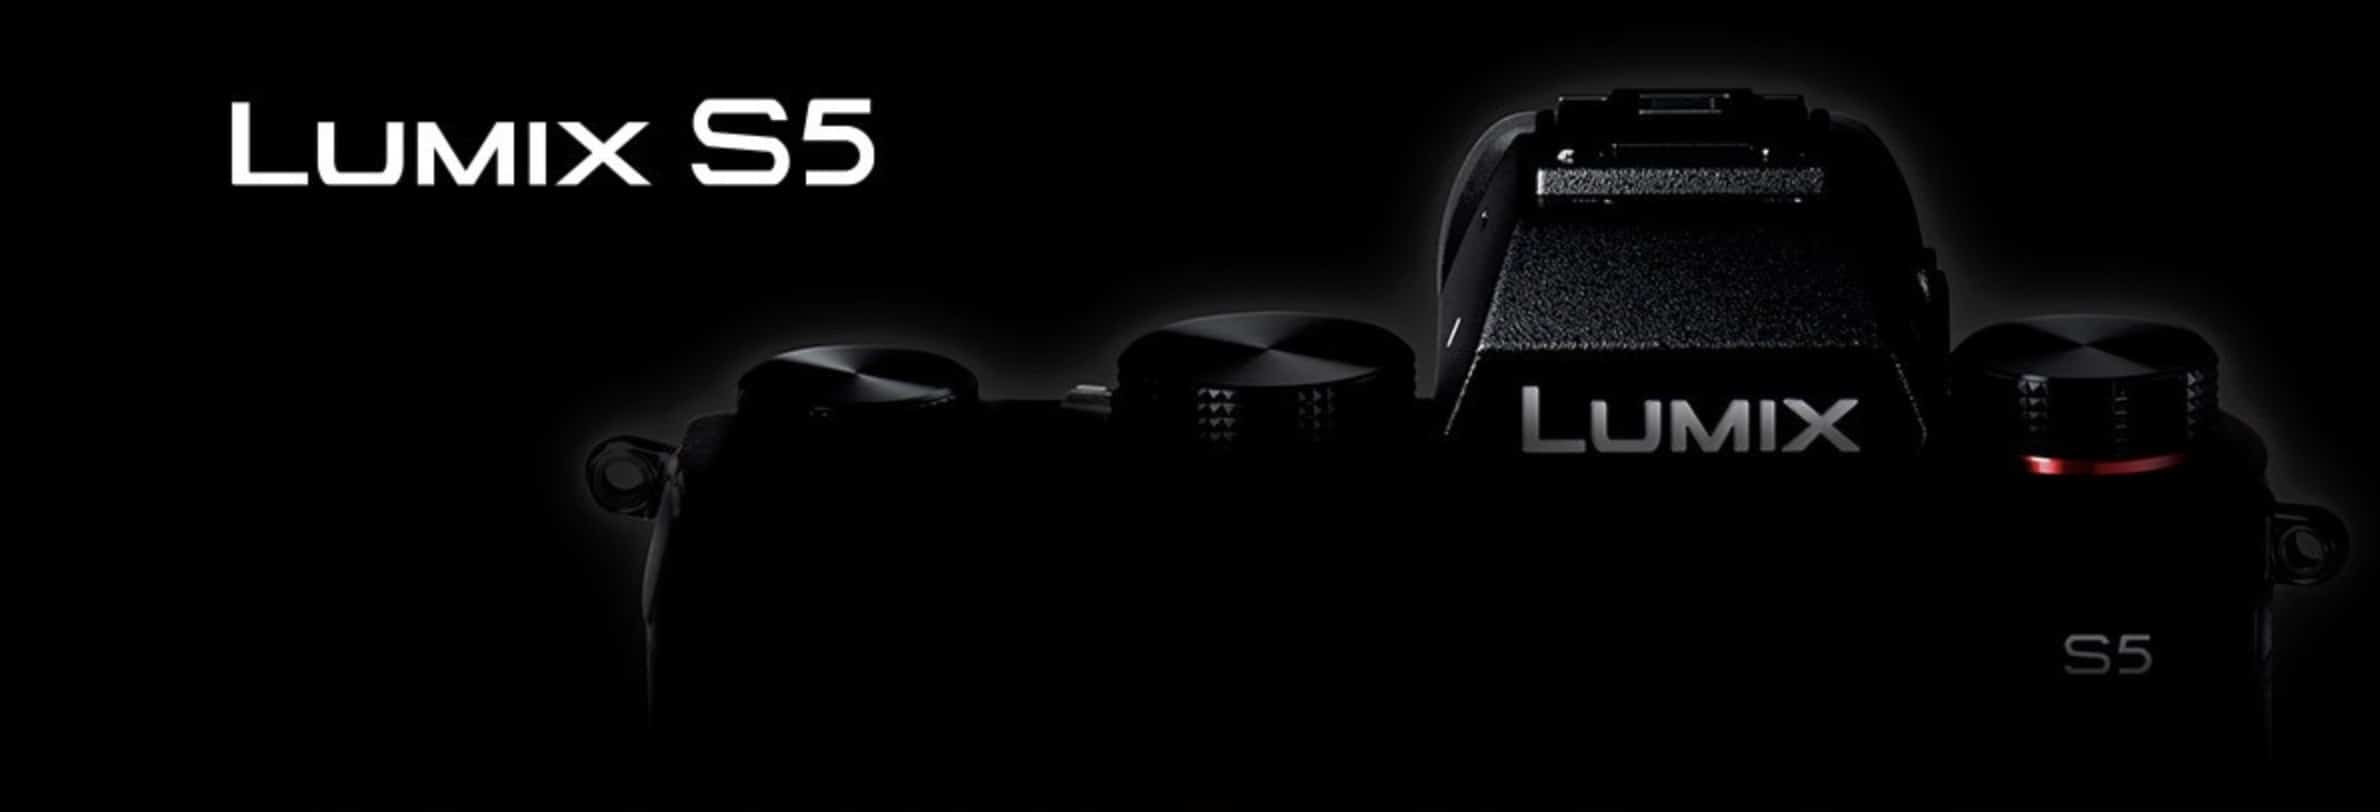 Lumix S5 sẽ được ra mắt chính thức vào ngày 02/09